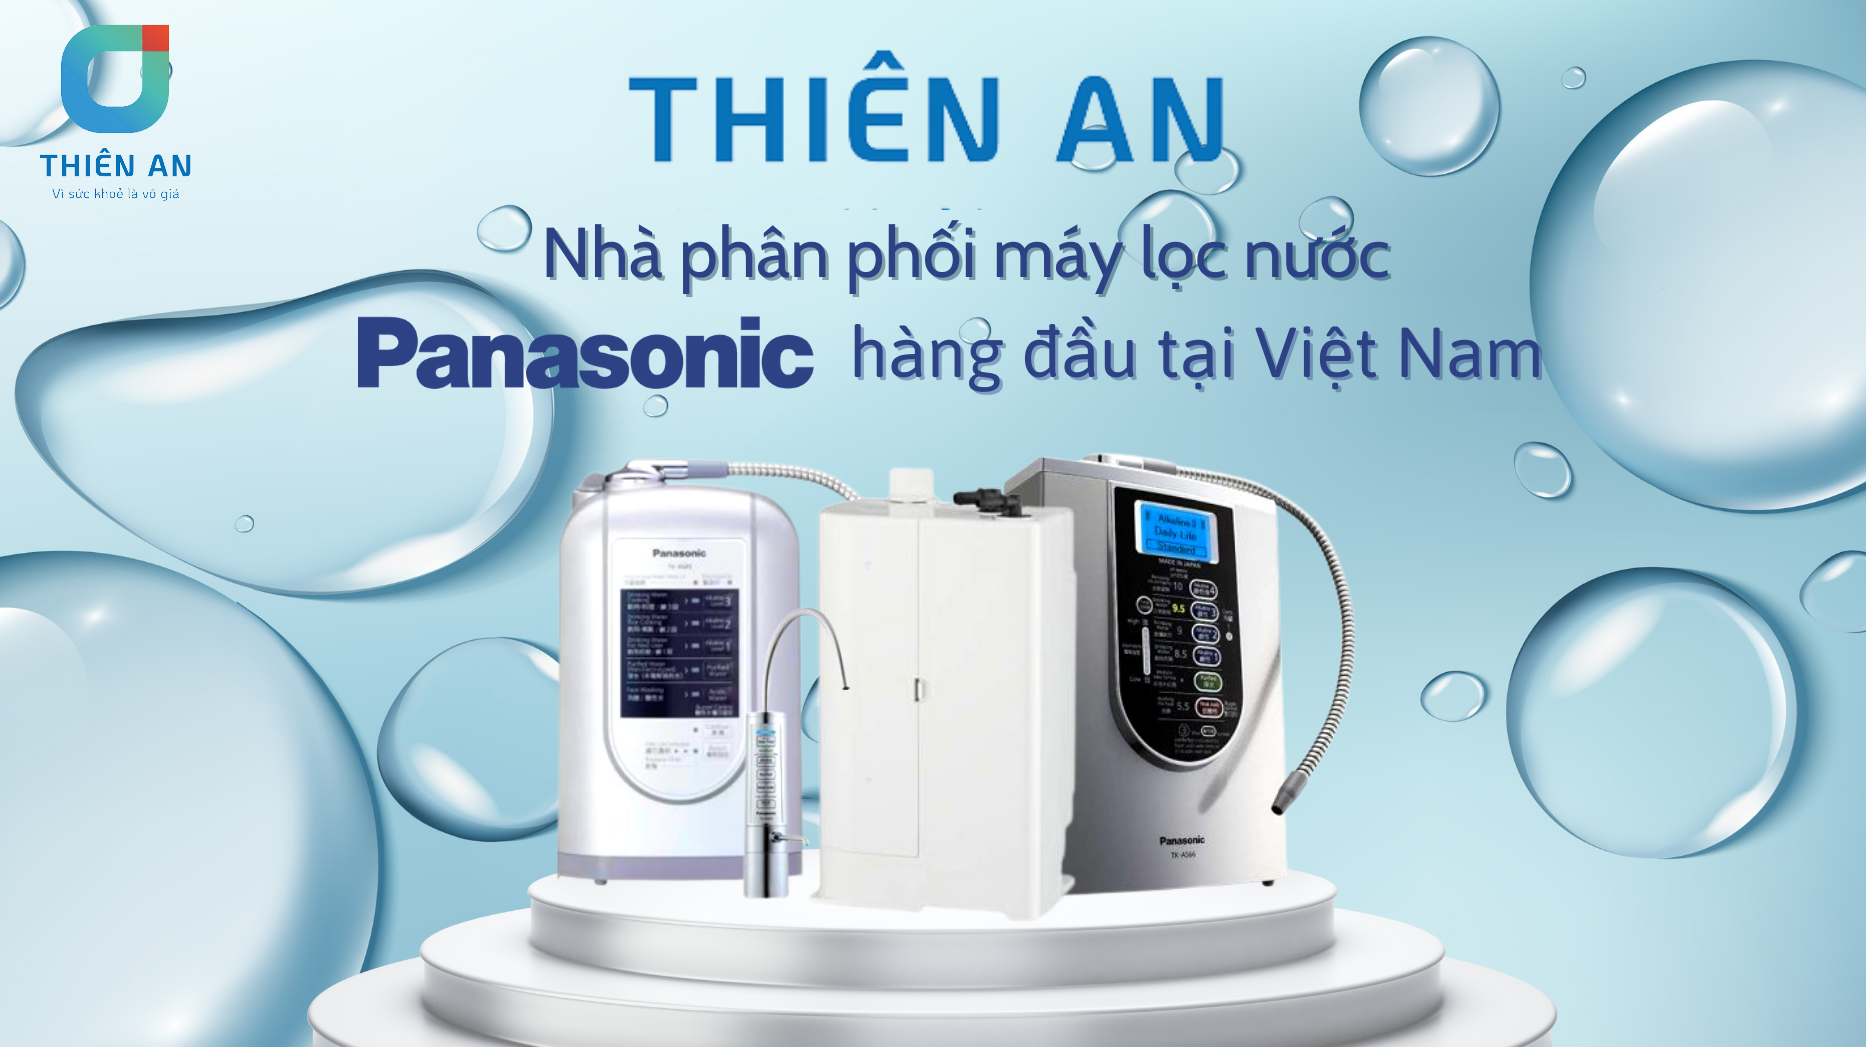 Thiên An - Địa chỉ bán máy lọc nước Panasonic tốt nhất 